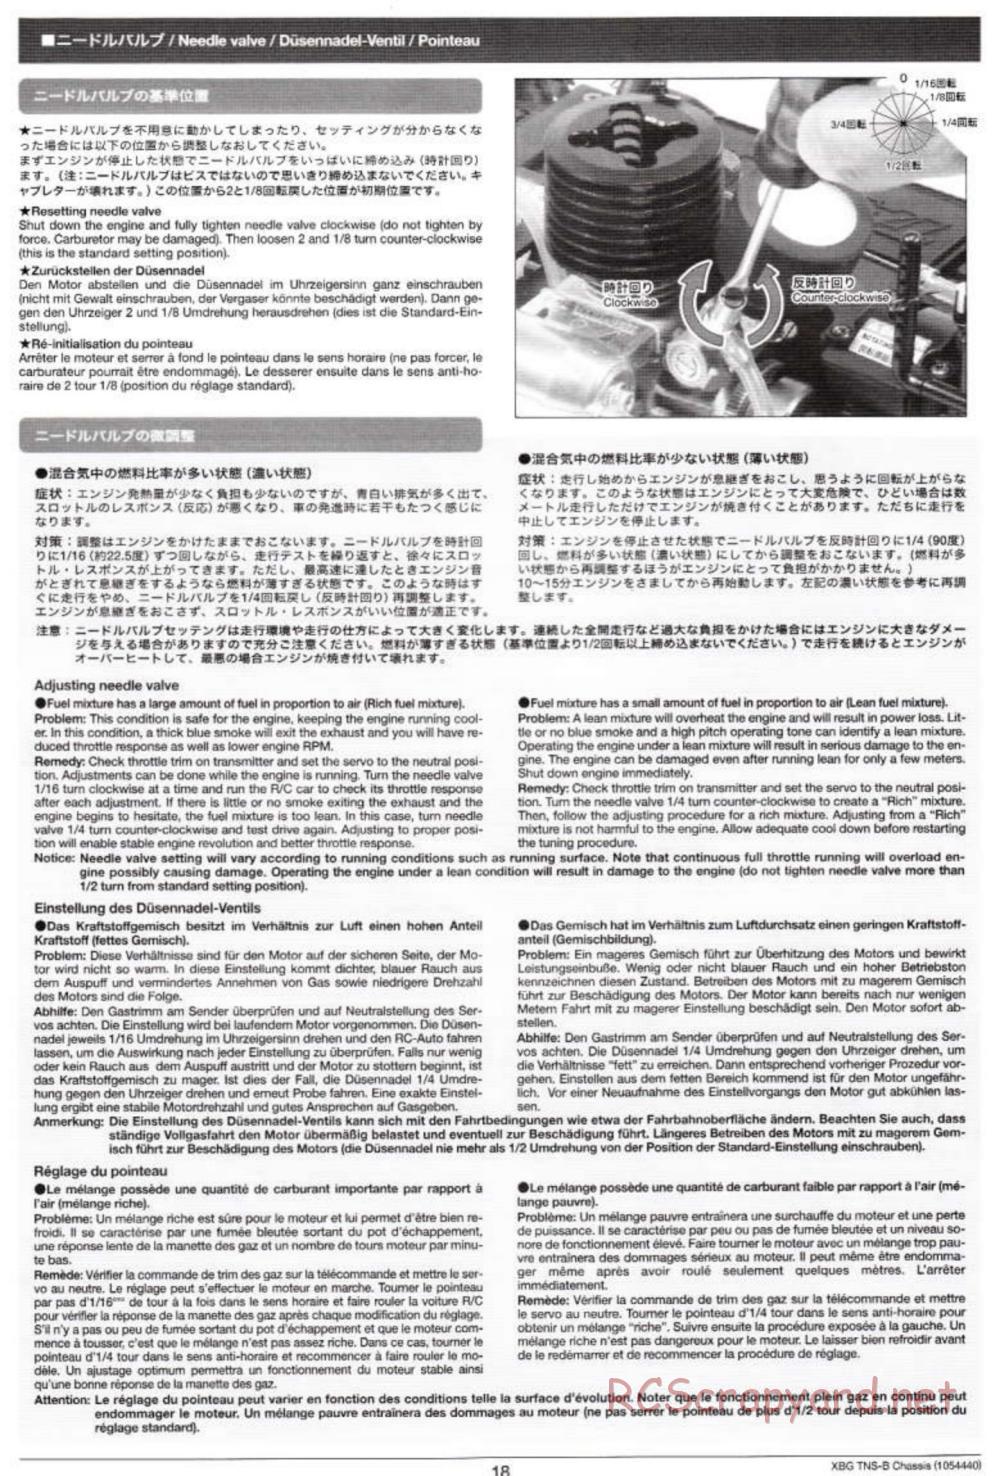 Tamiya - TNS-B Chassis - Manual - Page 18